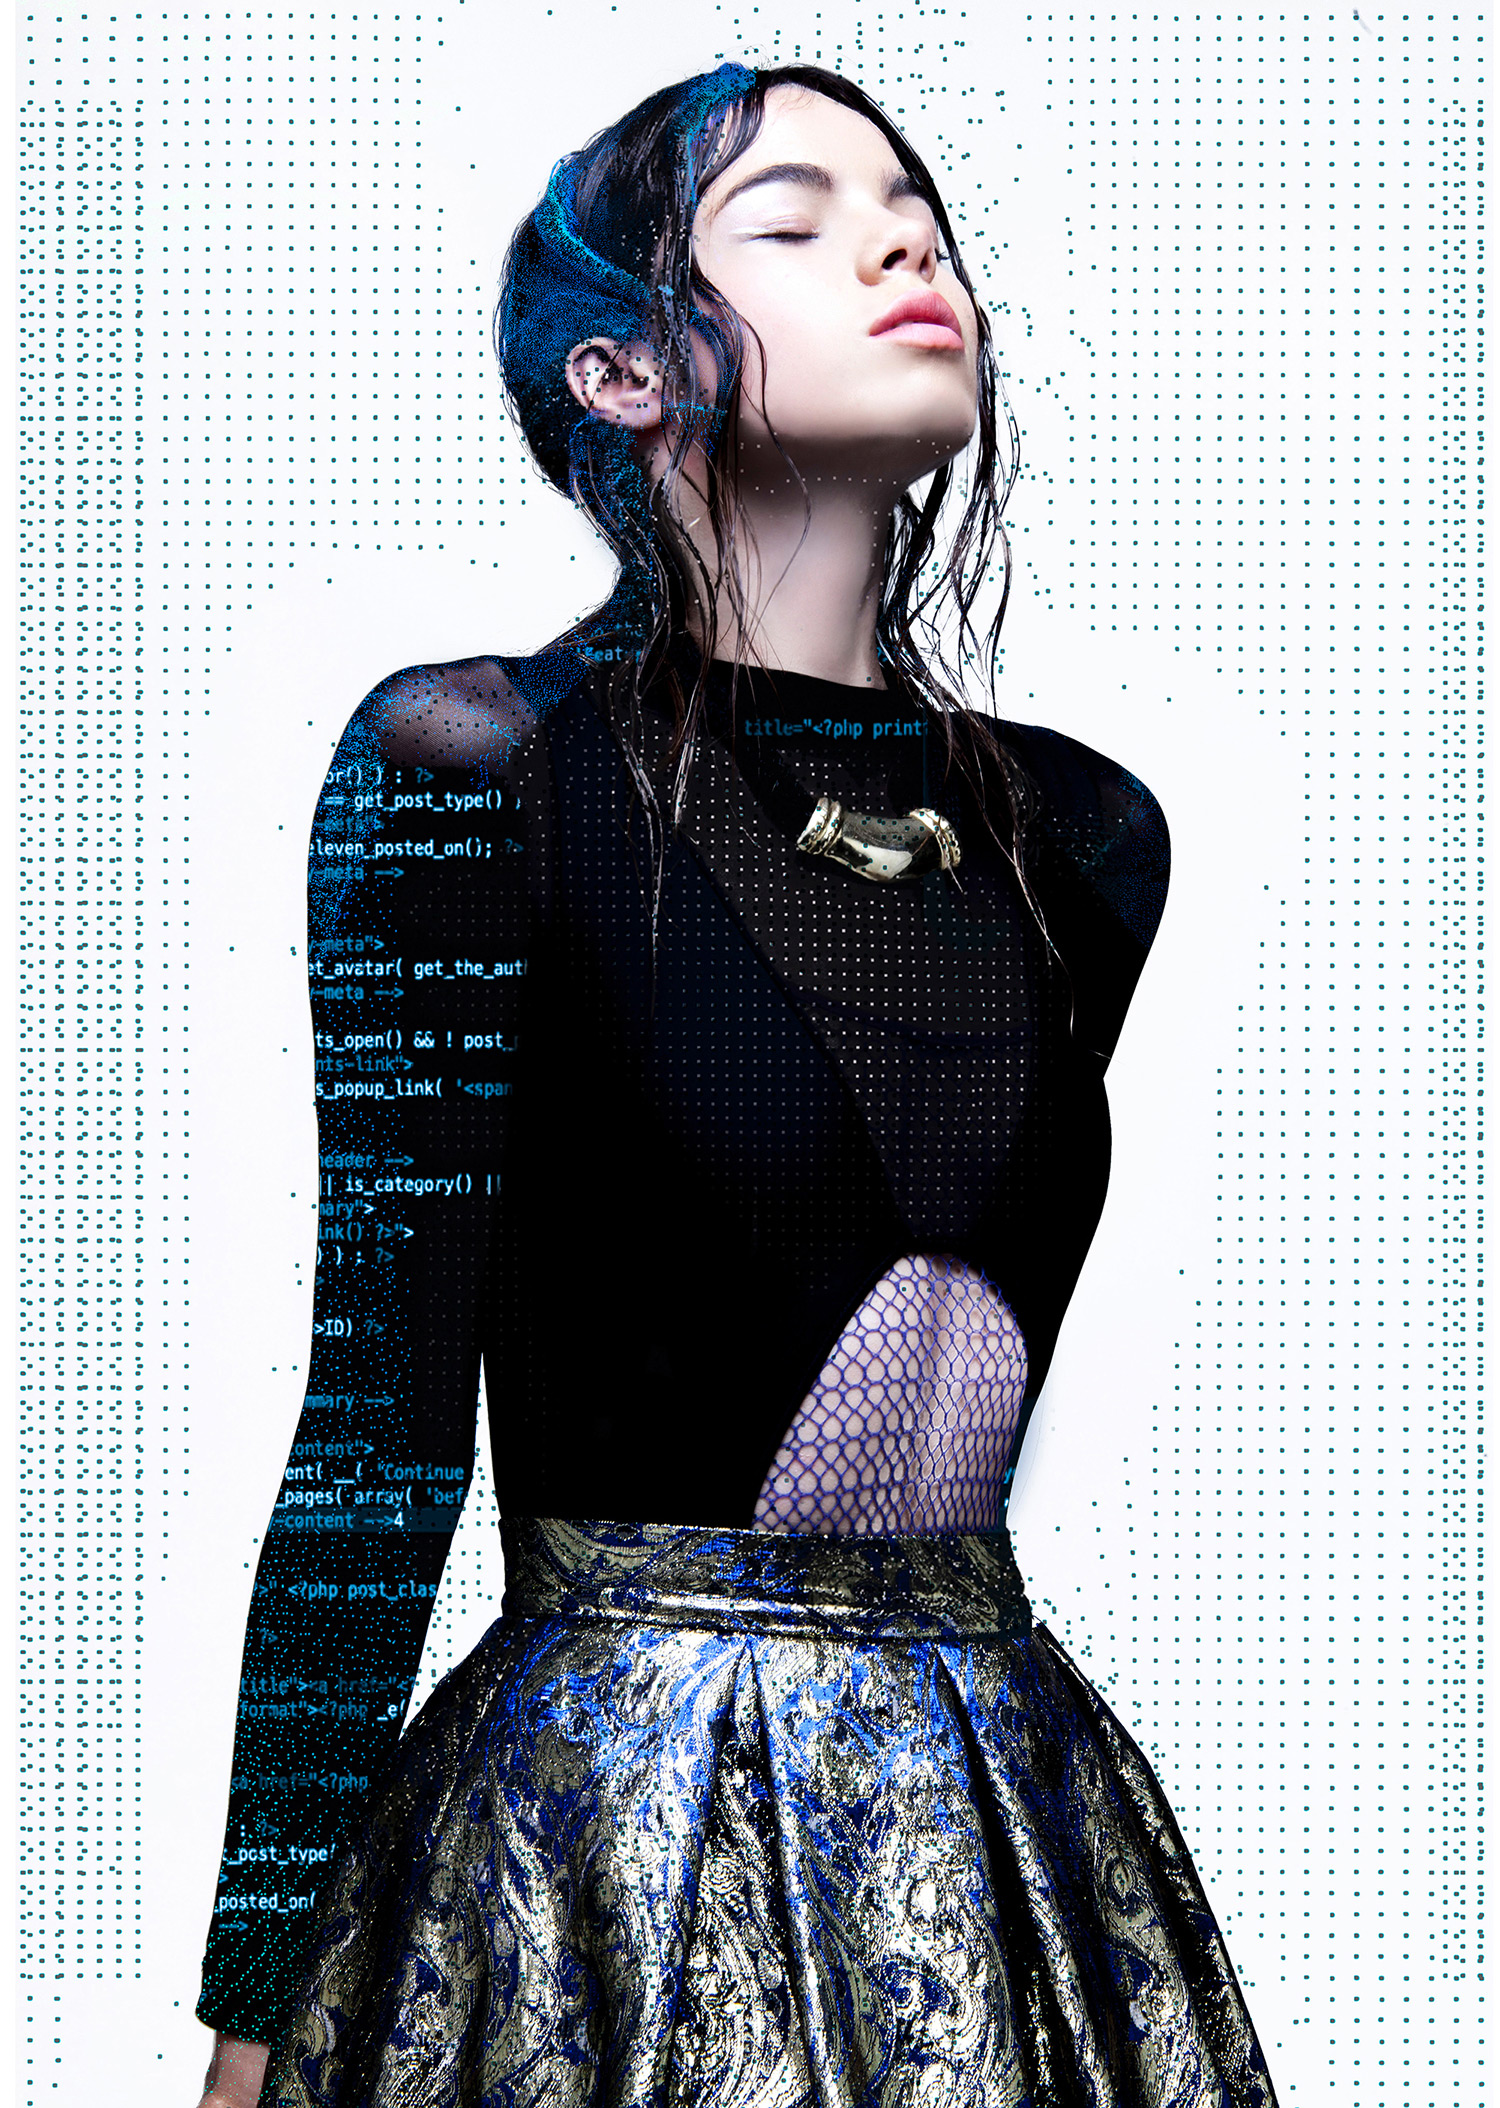 Antonella Arismendi - fashion portrait with glitch art